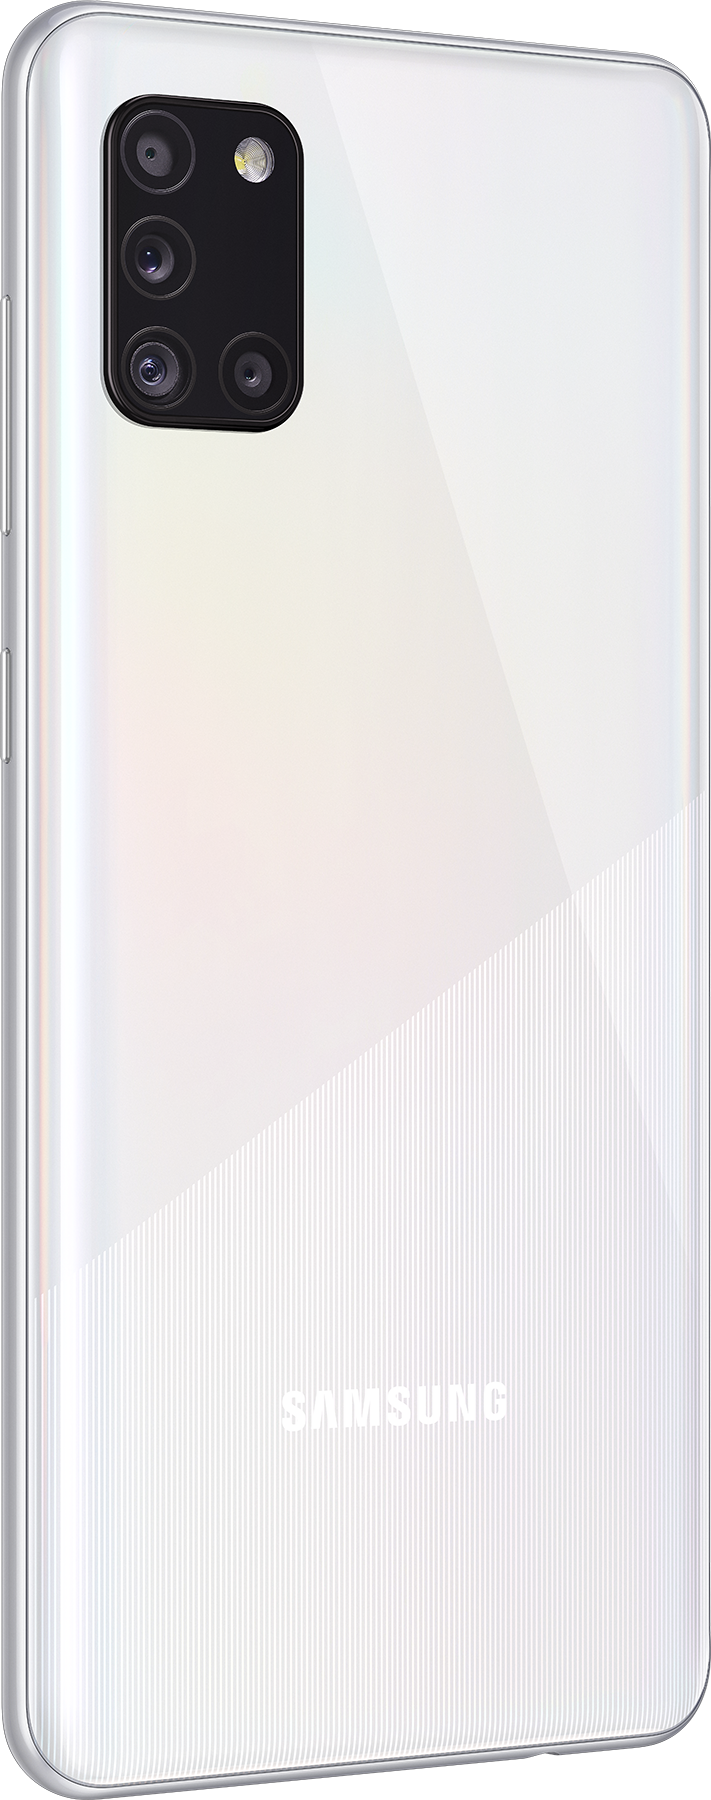 Samsung Galaxy A31 SM-A315F 128GB